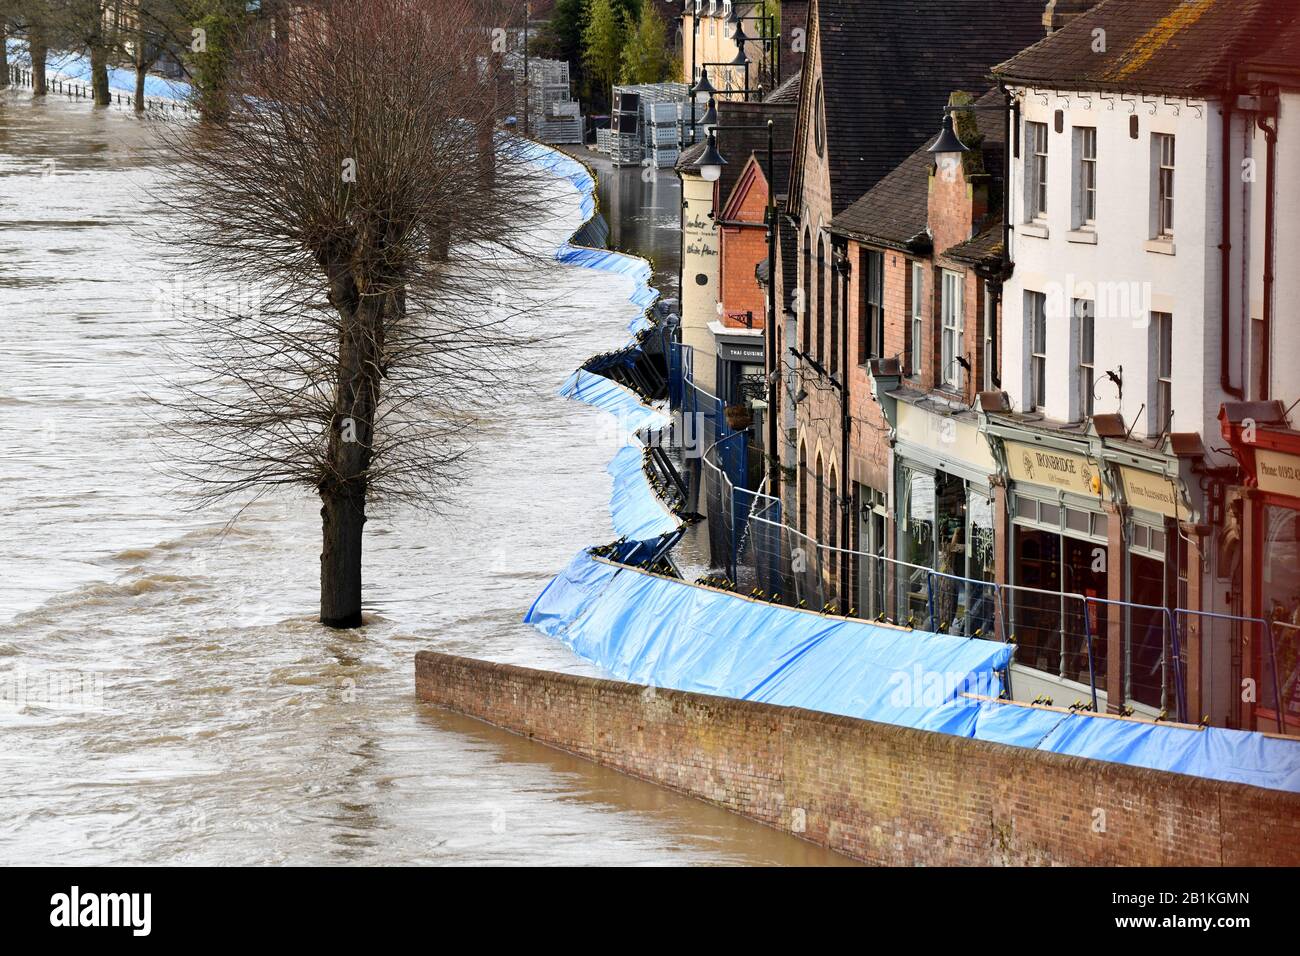 Ironbridge 26th février 2020 les eaux de crue de la rivière Severn compromettent les barrières de défense contre les inondations après les avoir forcées à traverser la route et à pénétrer dans les maisons et les magasins. Crédit : David Bagnall Banque D'Images